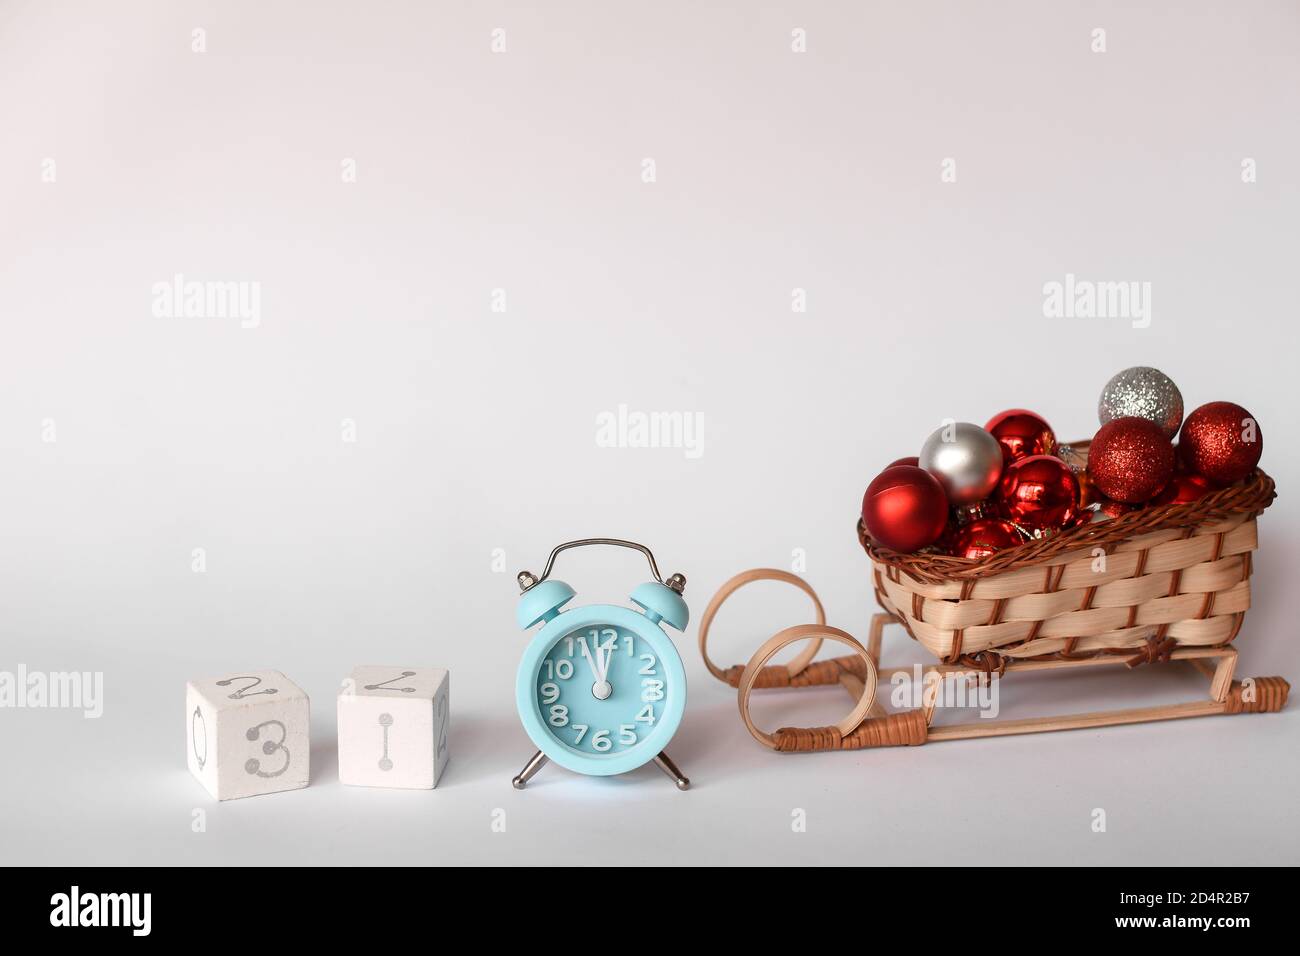 Weihnachtskomposition. Blauer Wecker, Goldene Schneeflocken, Würfel mit der Zahl 31, weihnachtsspielzeug Stockfoto